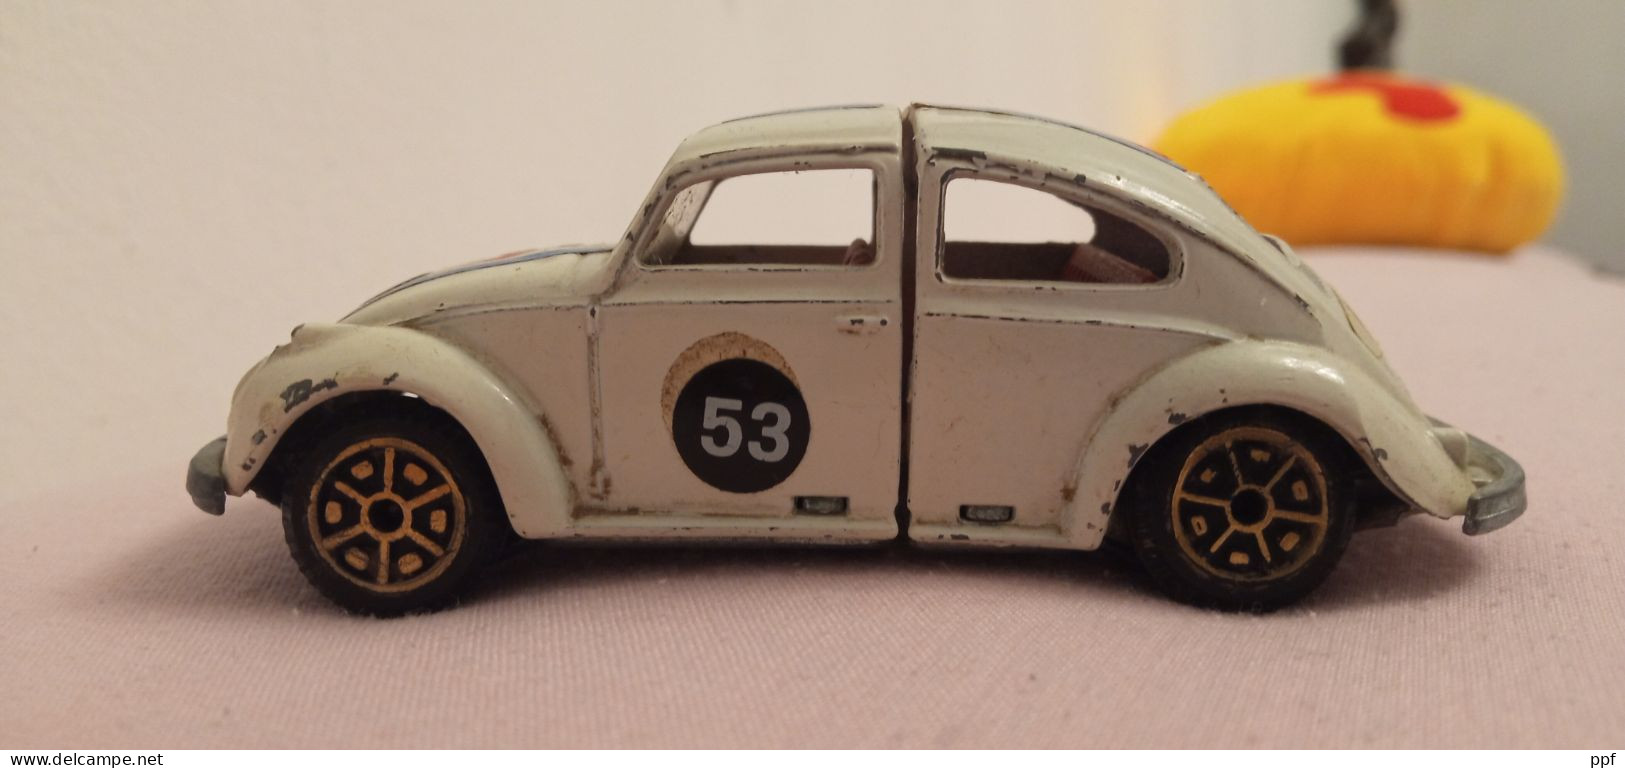 Politoys Herbie il maggioolino tutto matto N. W 2, made in Italy, vedi immagini.